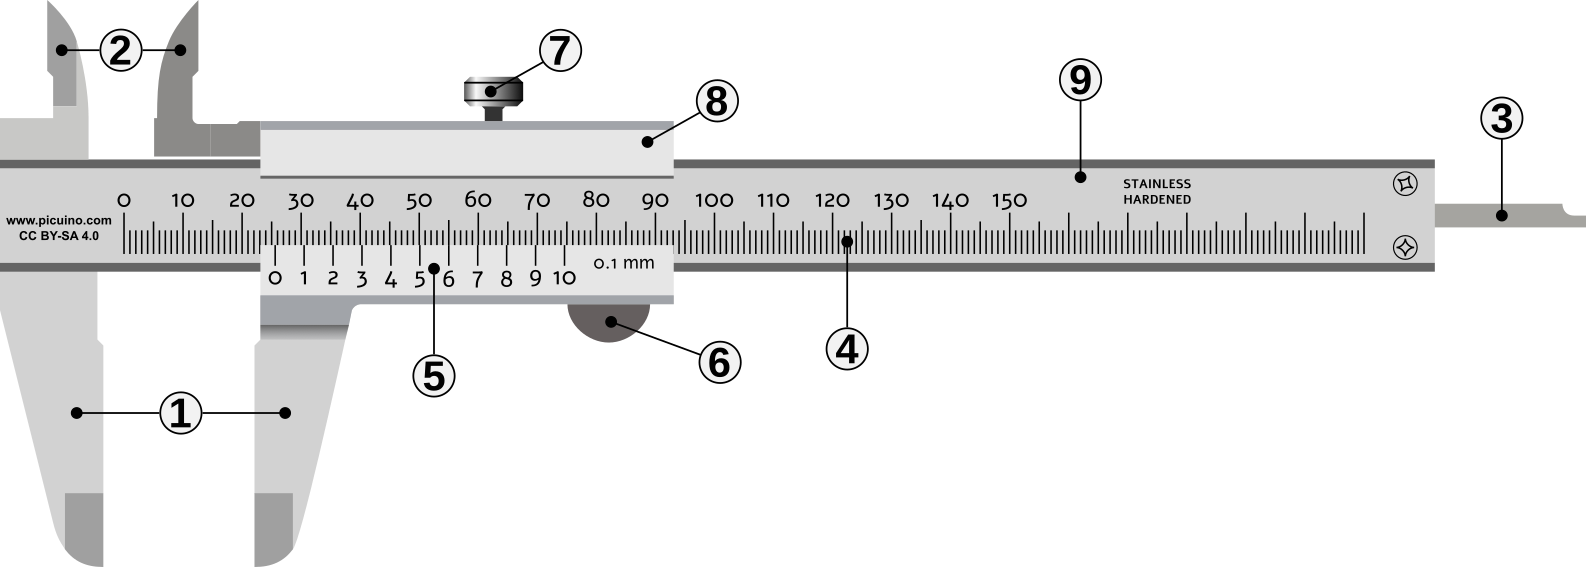 Calibre de medida con sus partes señaladas por números.